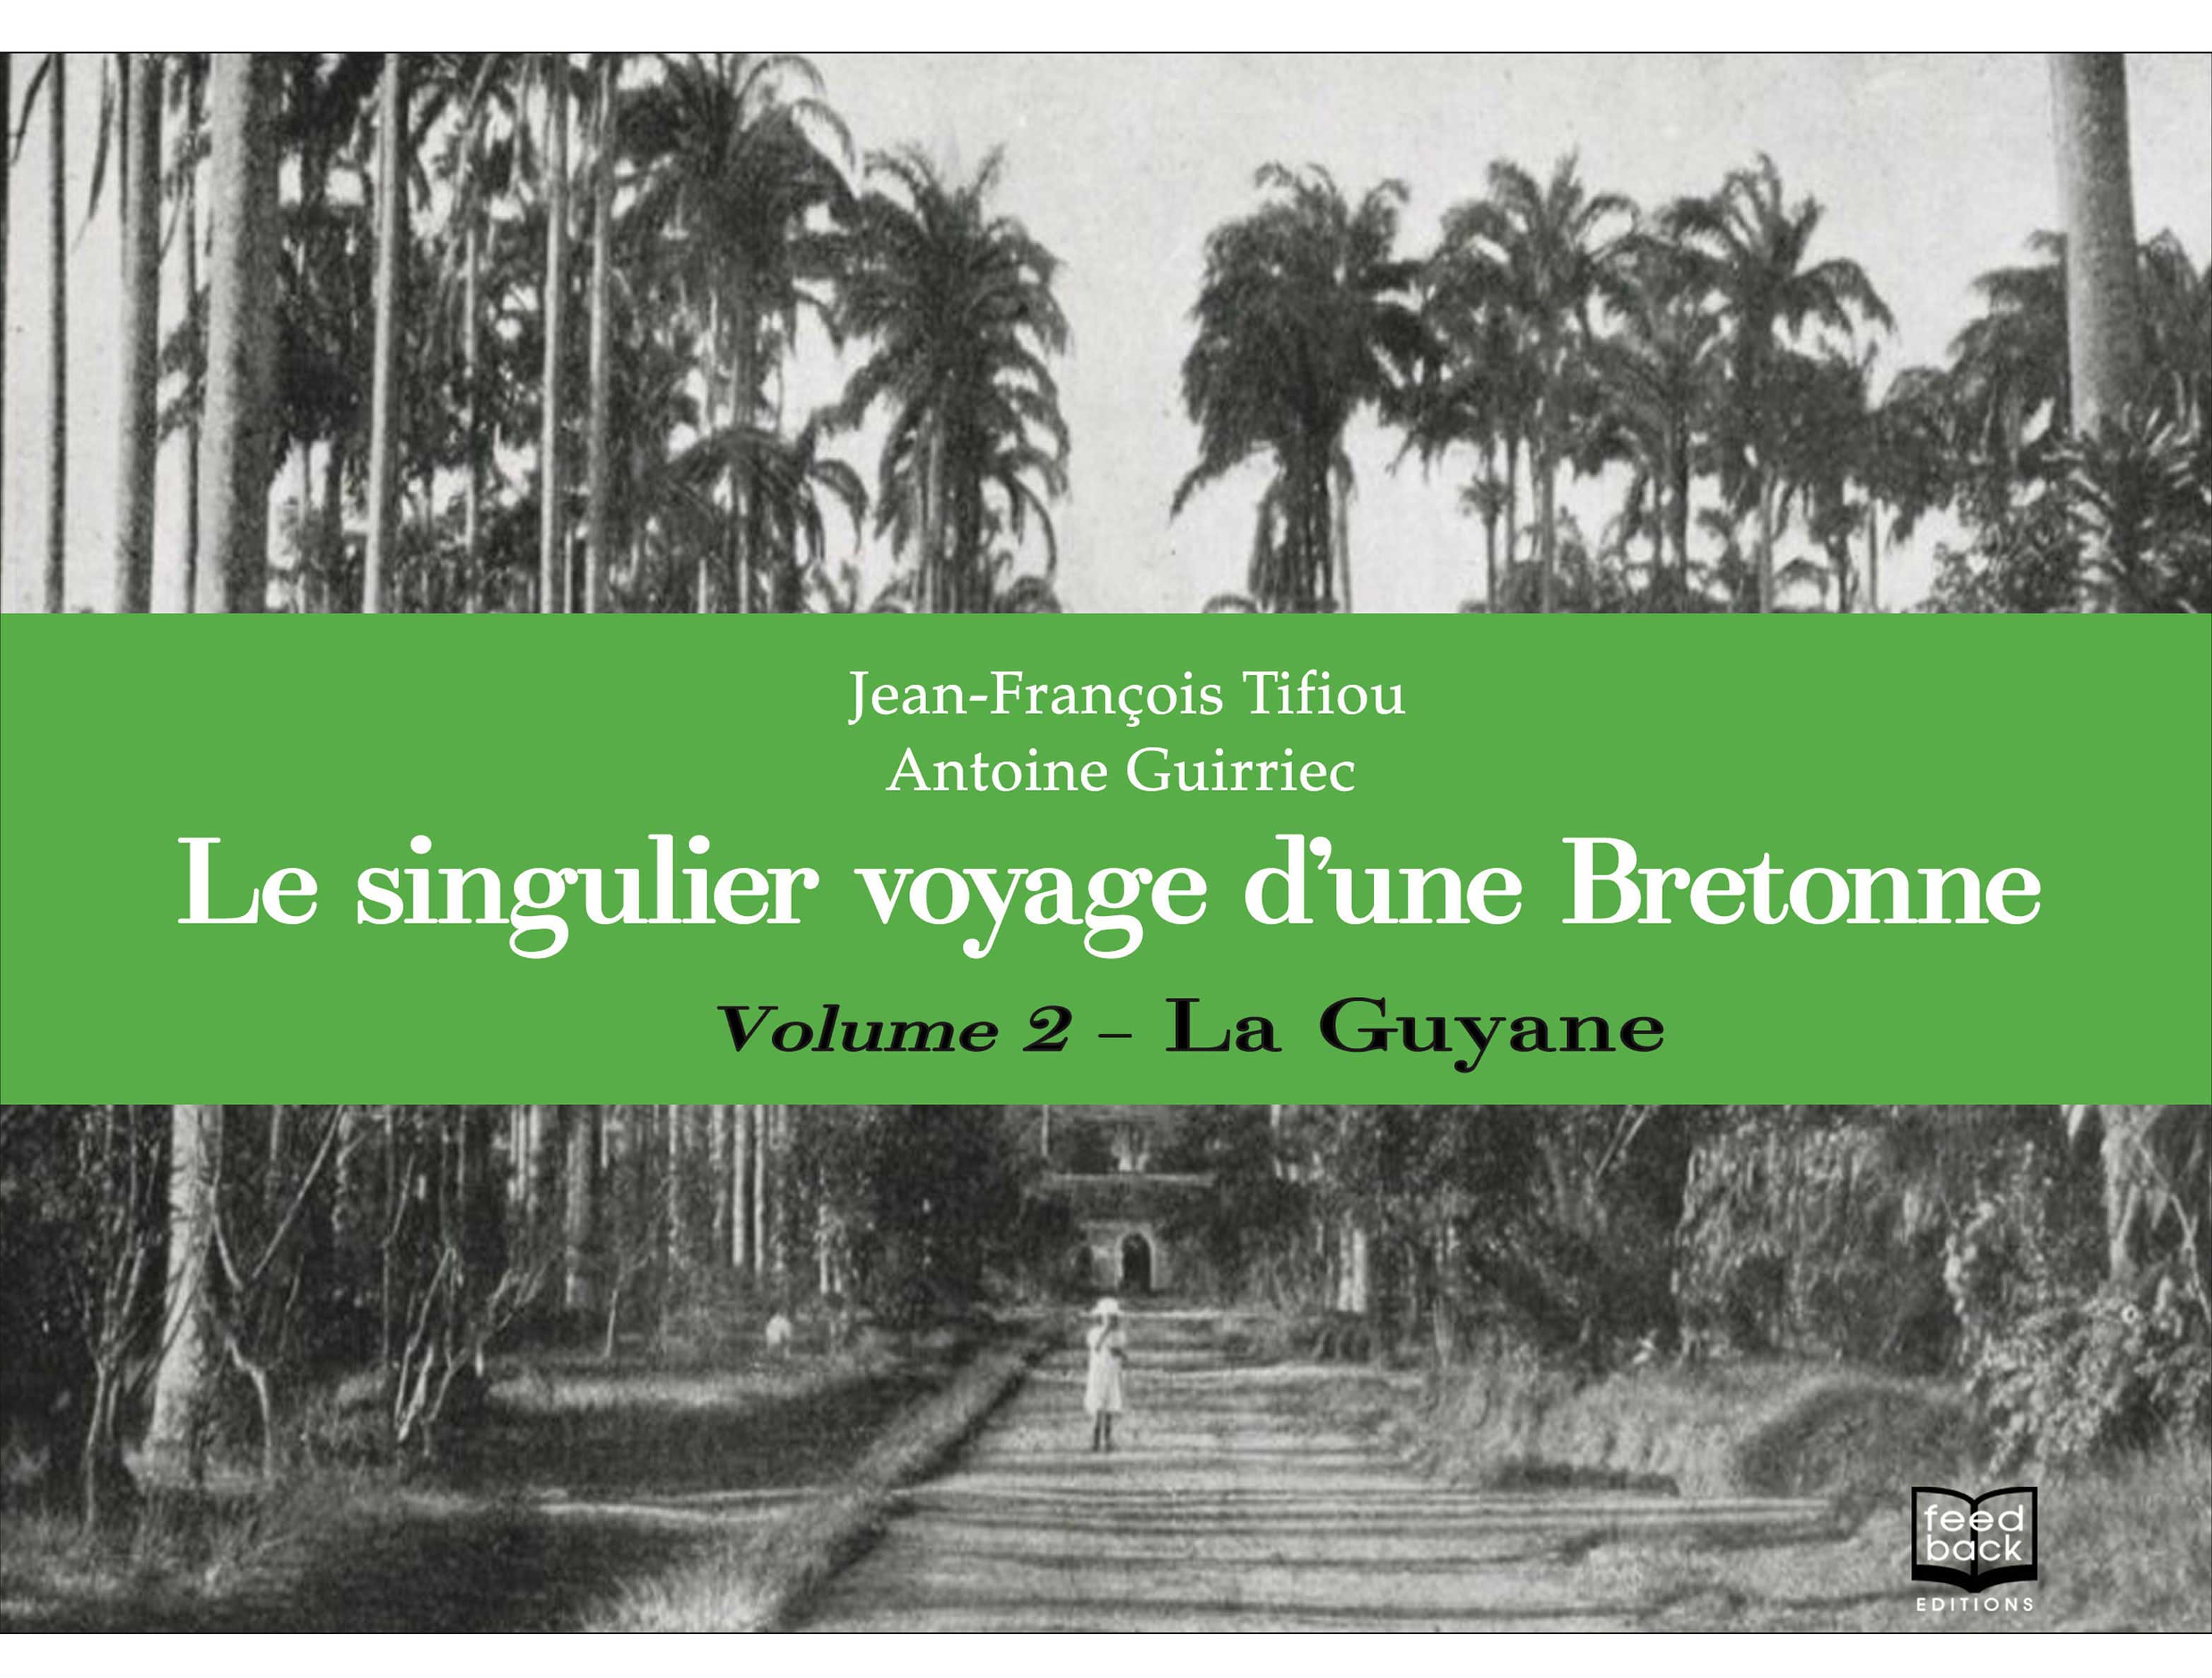 Le singulier voyage d'une Bretonne - Volume 2 - Jean-François Tifiou & Antoine Guirriec